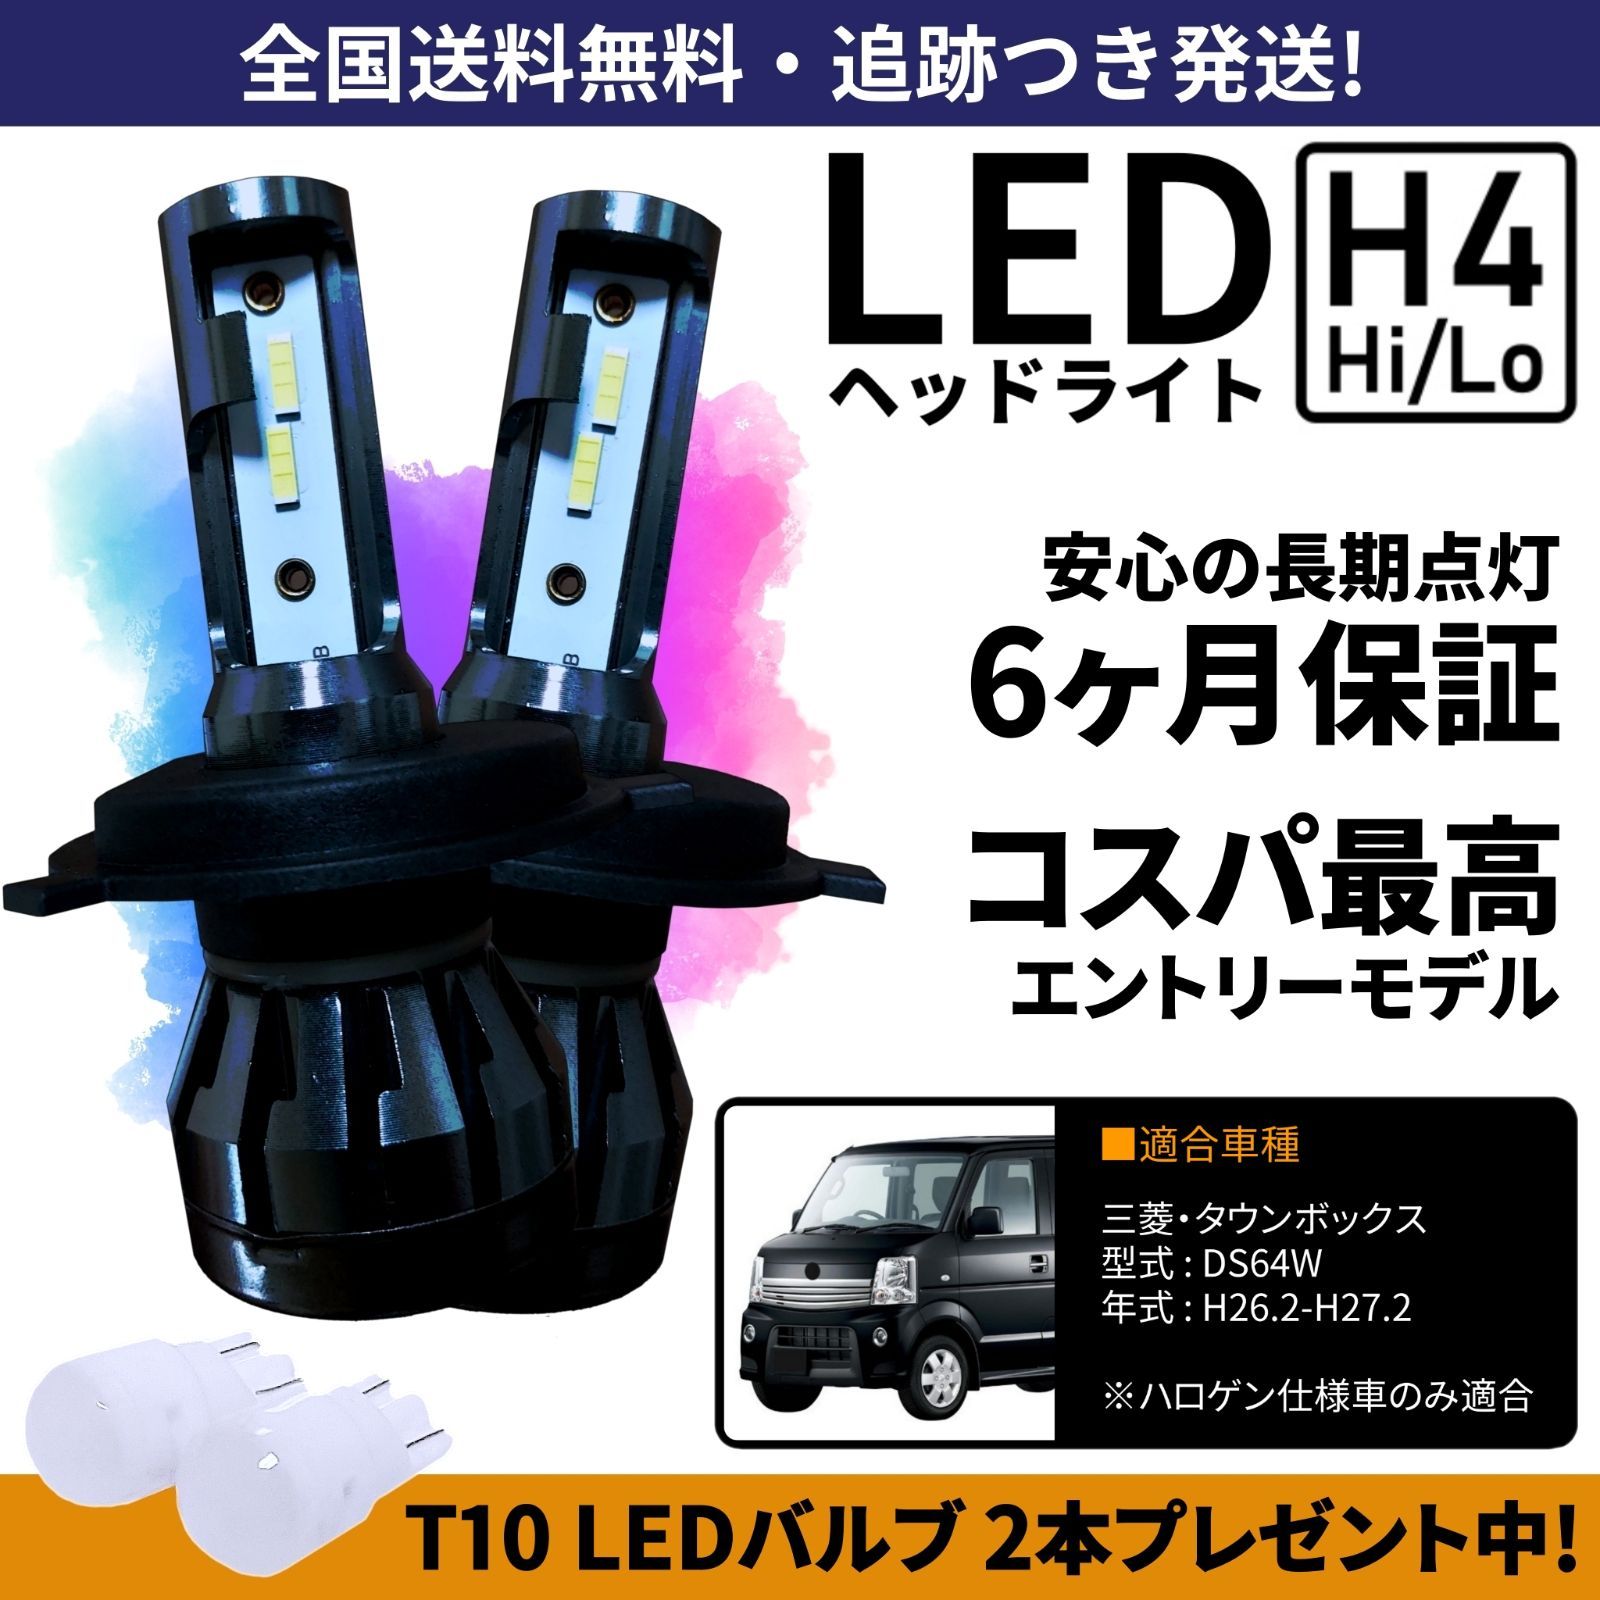 【送料無料】三菱 タウンボックス DS64W LEDヘッドライト H4 Hi/Lo ホワイト 6000K 車検対応 保証付き